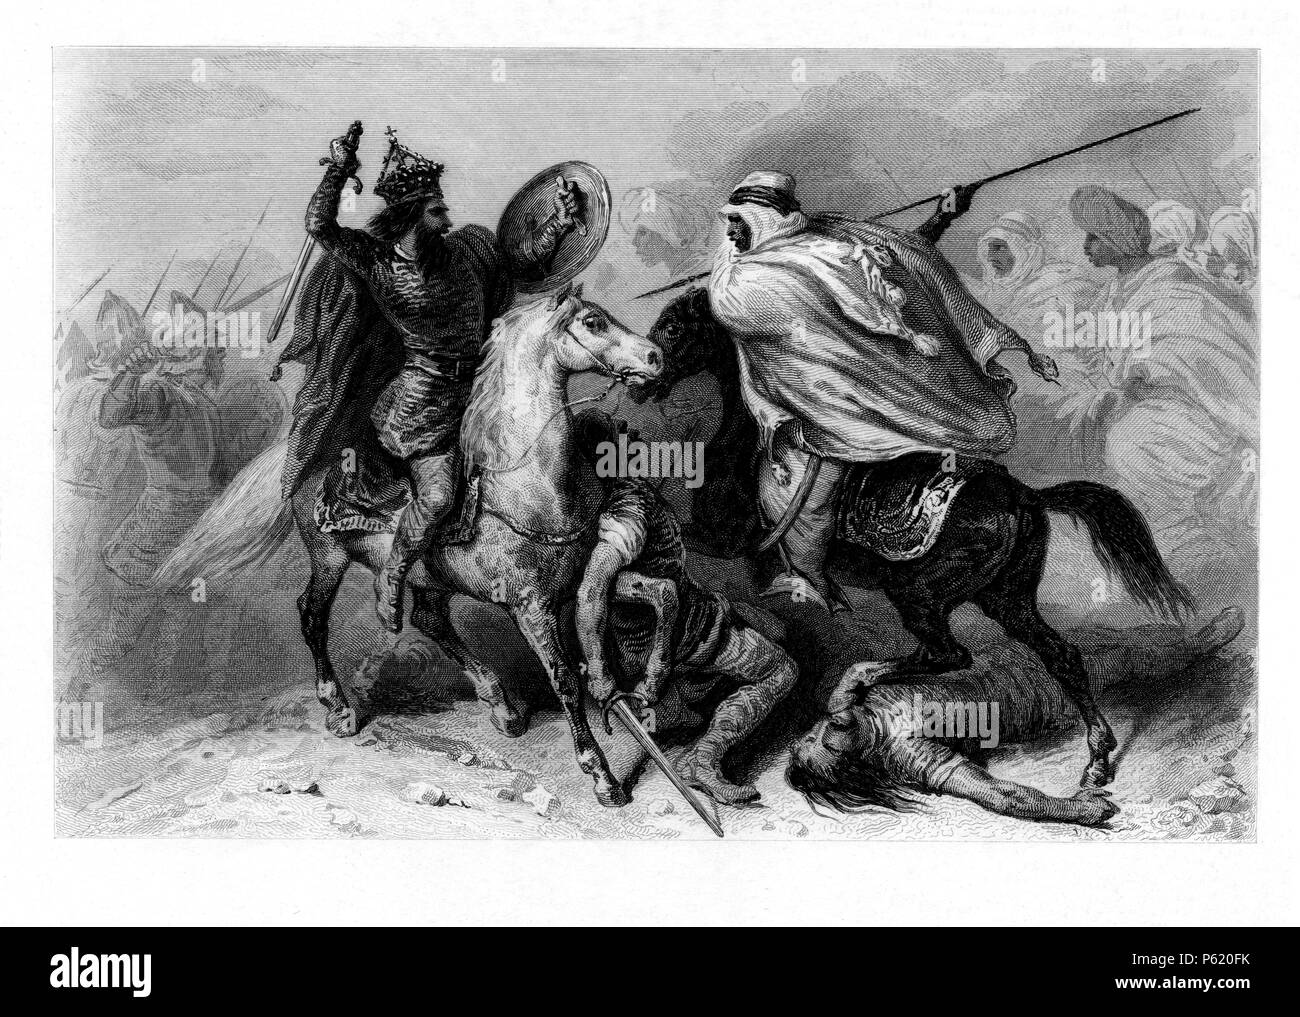 España. Batalla de Guadalete. Derrota de los visigodos y muerte del rey Rodrigo por los musulmanes de Tarik ibn Ziyad. Año 711. Stock Photo